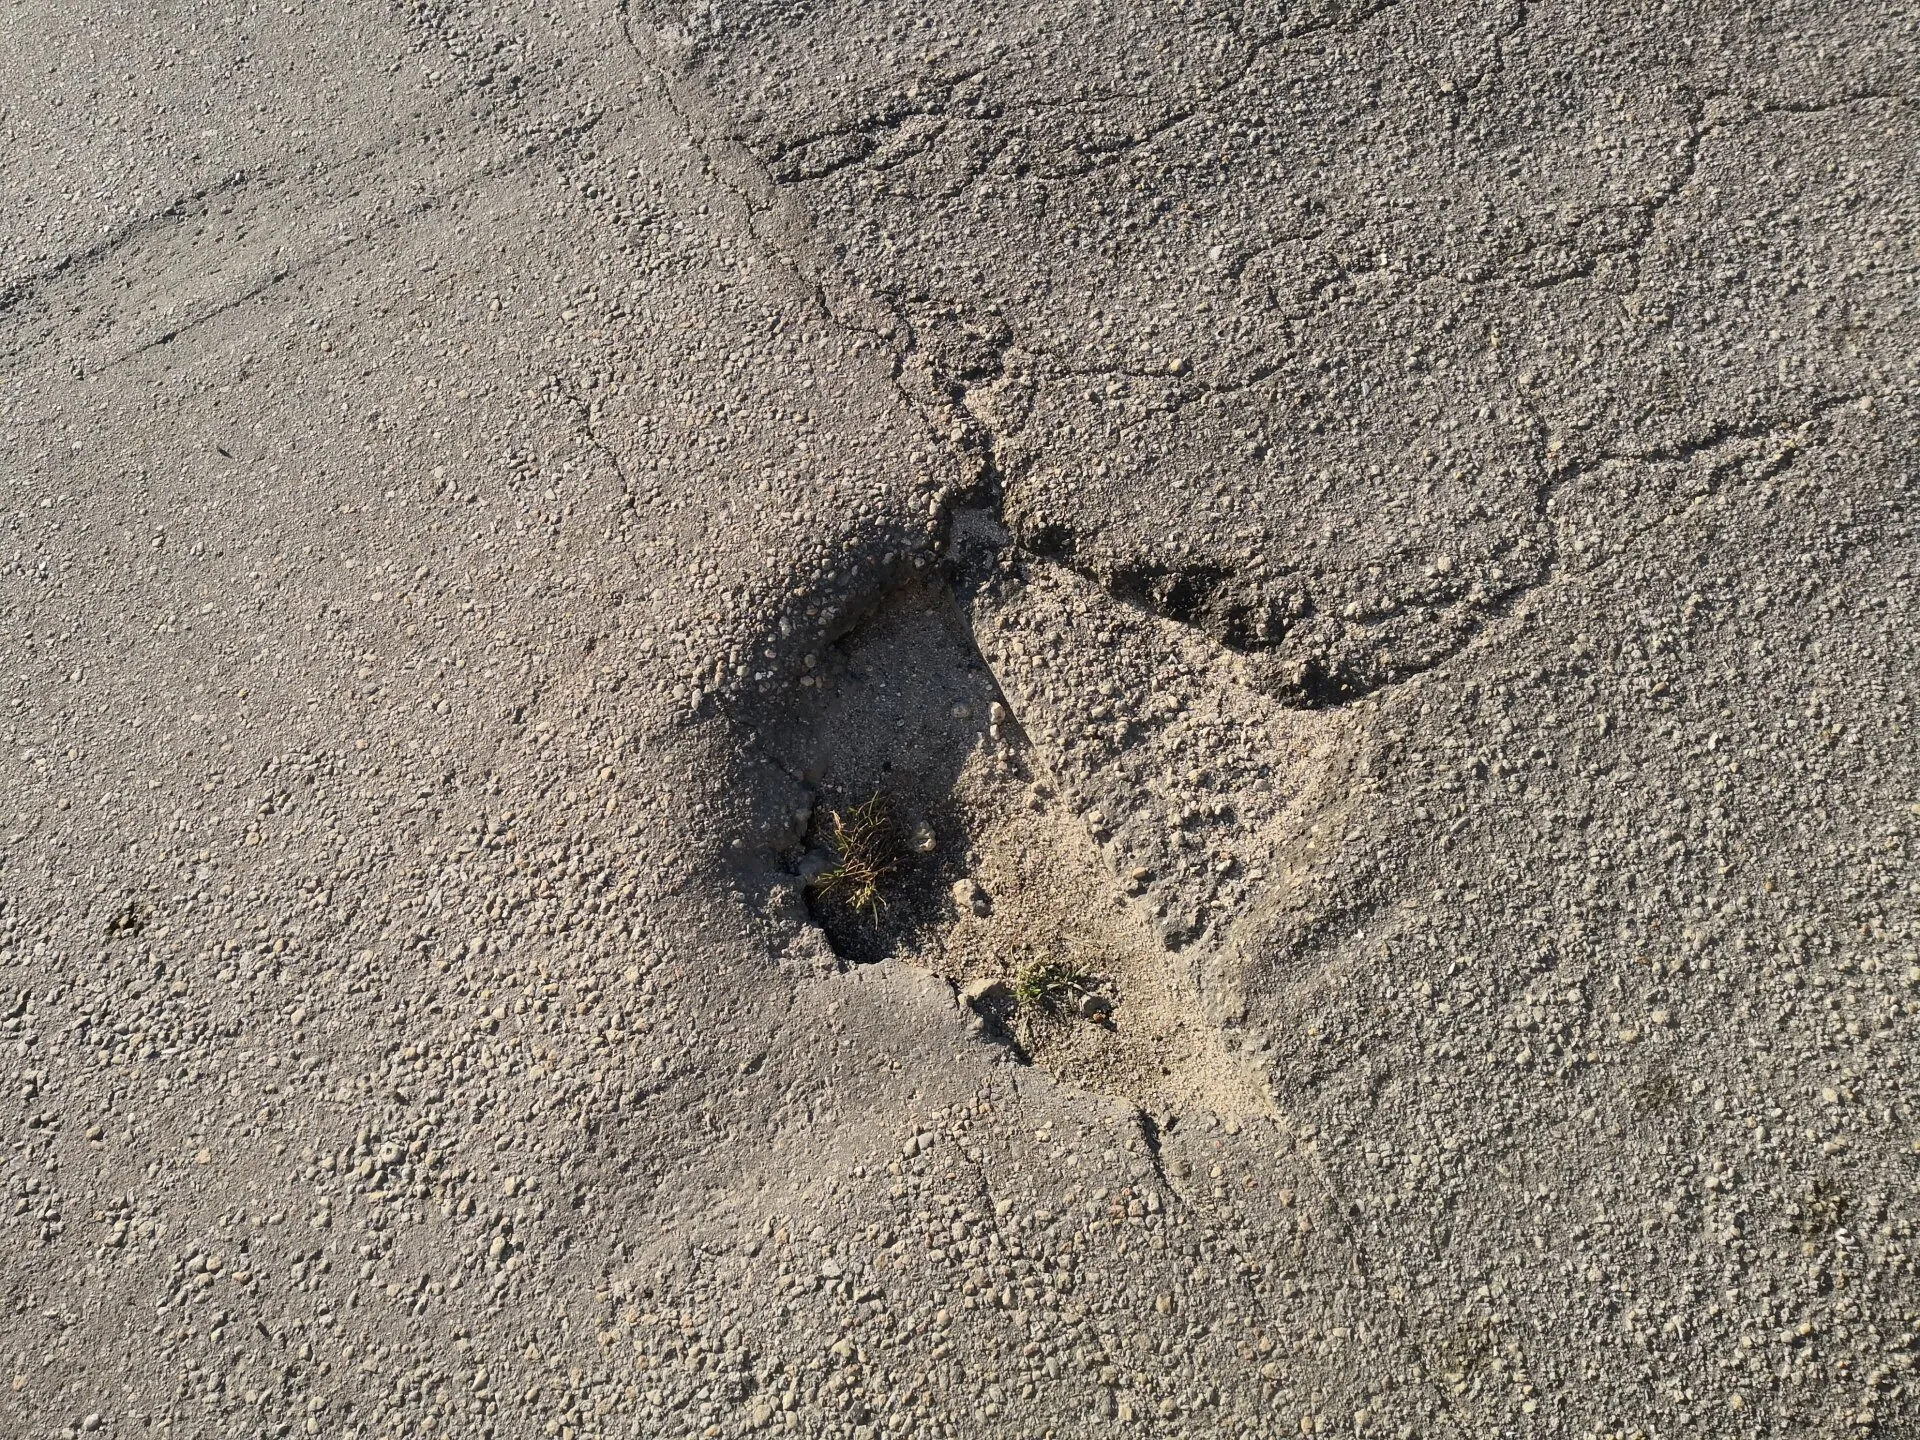 Pothole in need of repair on asphalt driveway jacksonville, fl